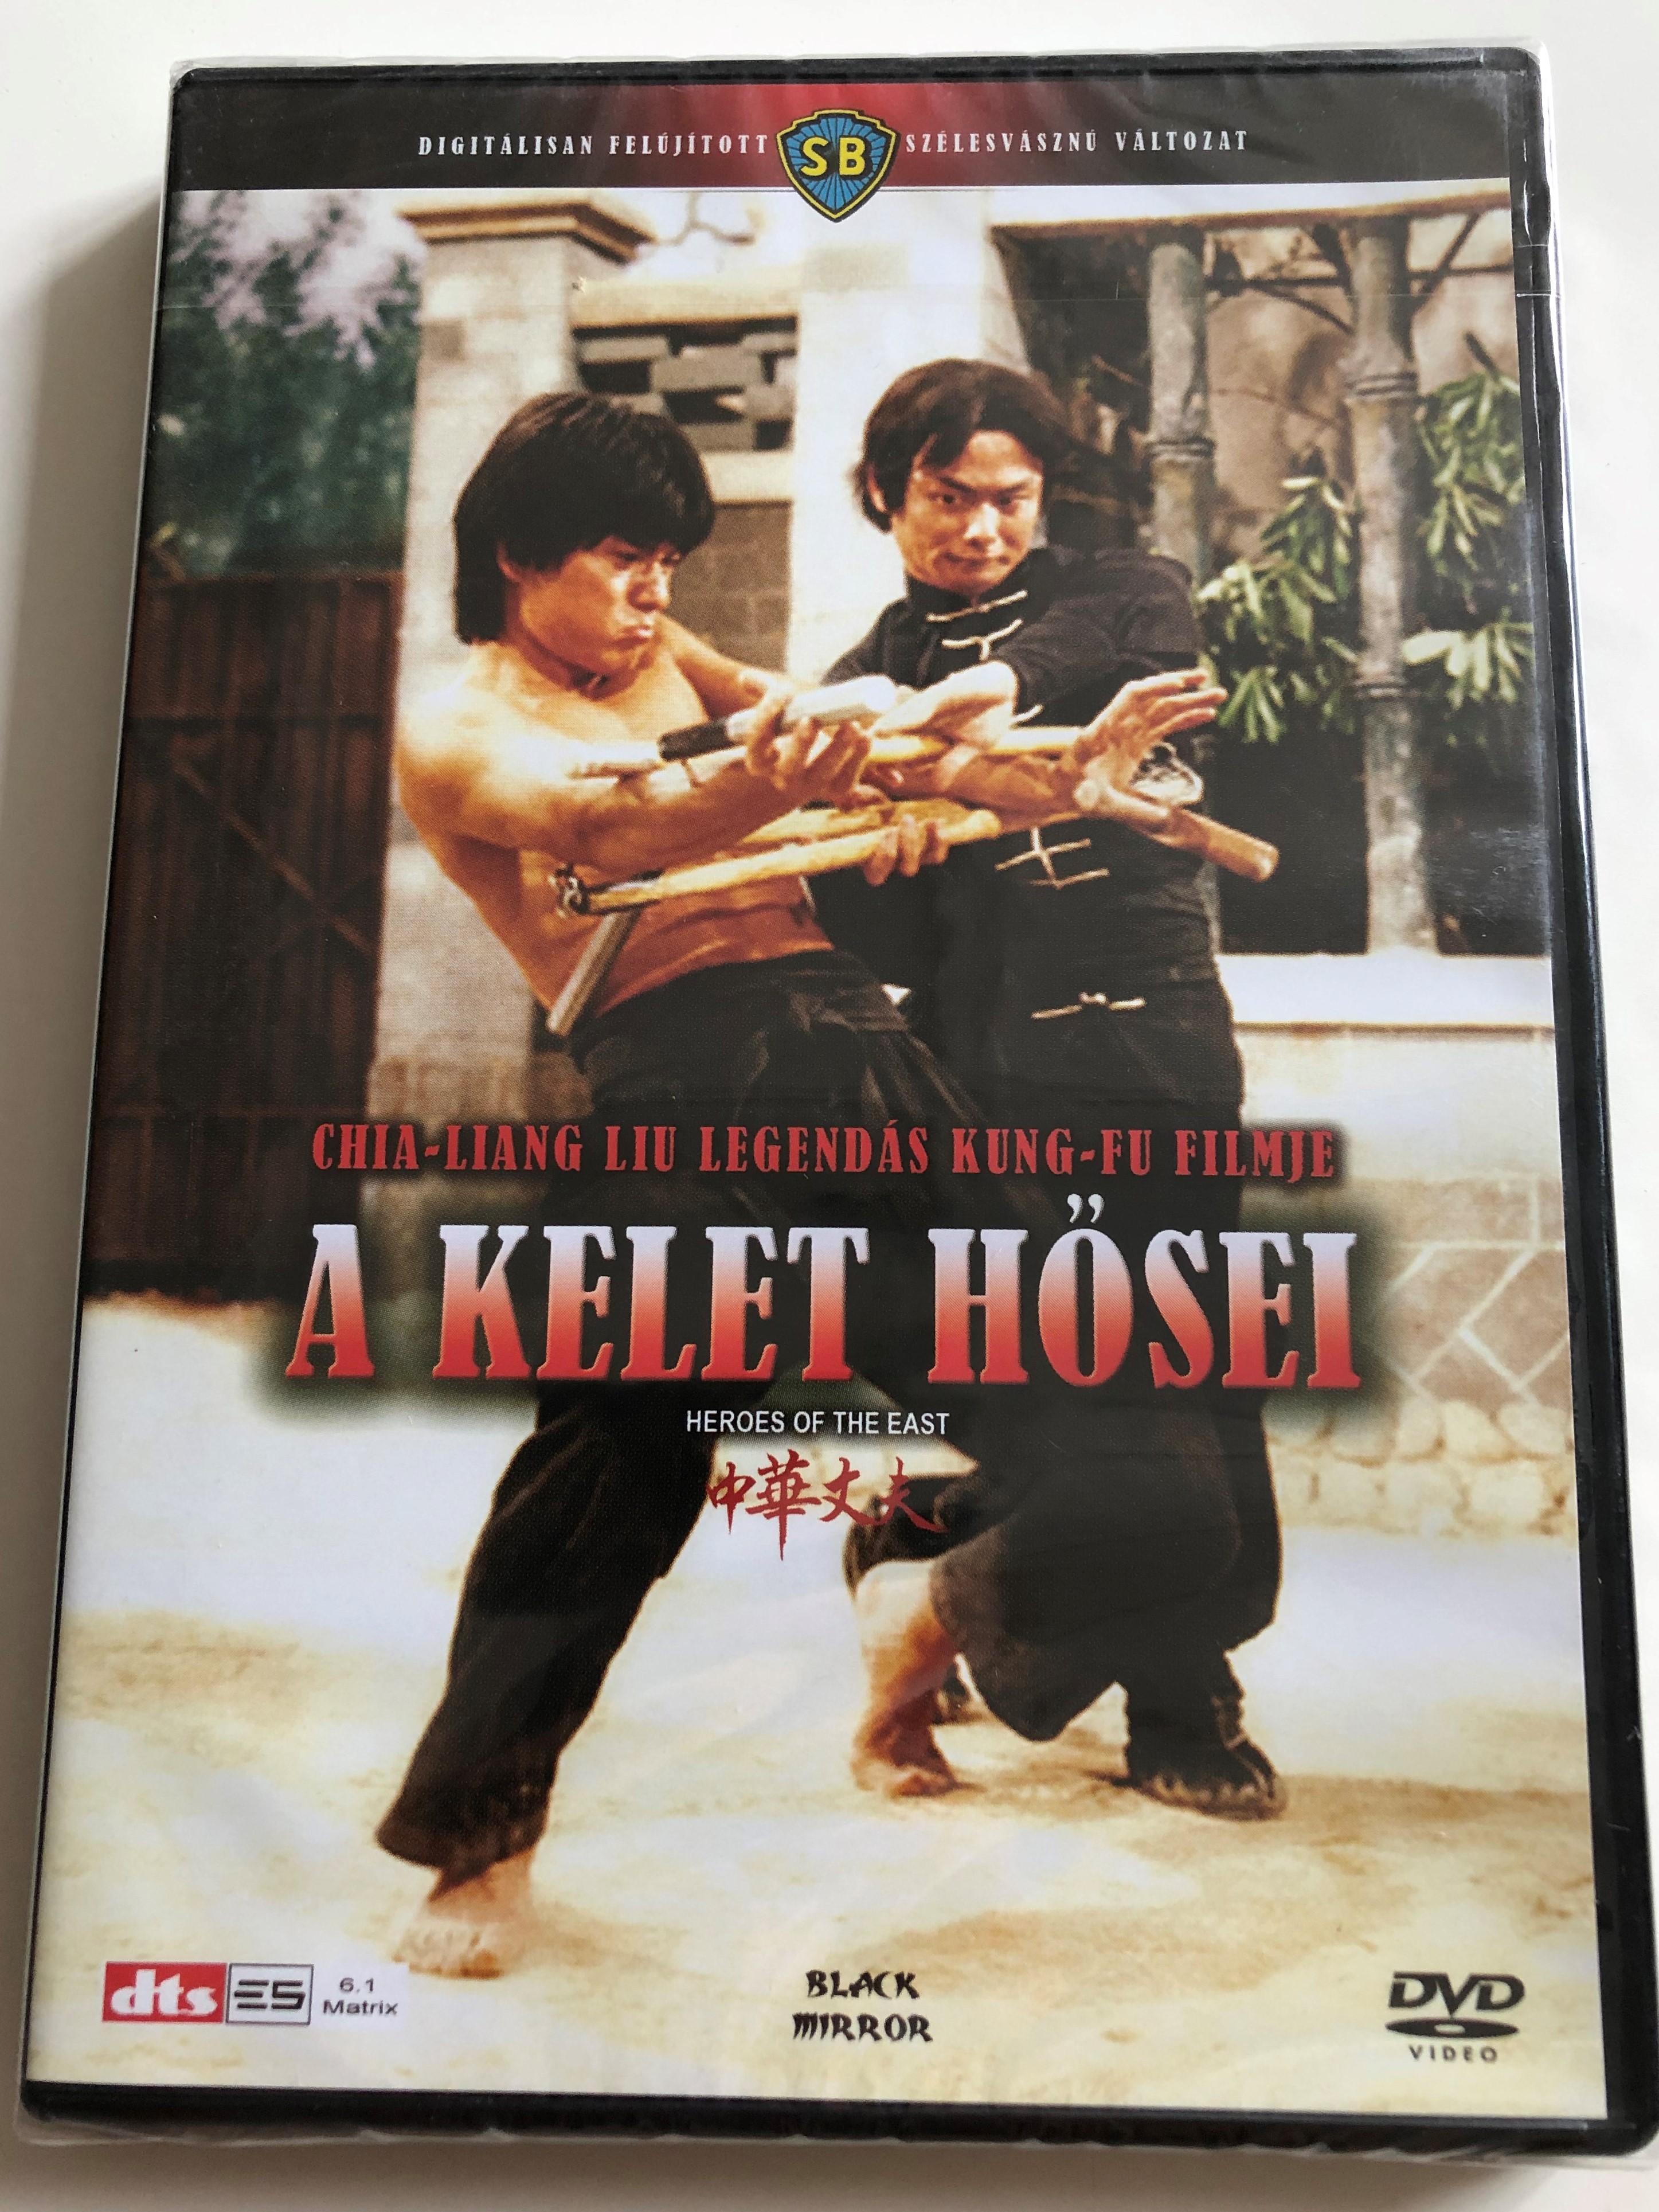 heroes-of-the-east-dvd-1978-a-kelet-h-sei-directed-by-chia-liang-liu-starring-chia-hui-liu-yuka-mizuno-lung-chan-kang-yeh-cheng-miao-ching-1-.jpg